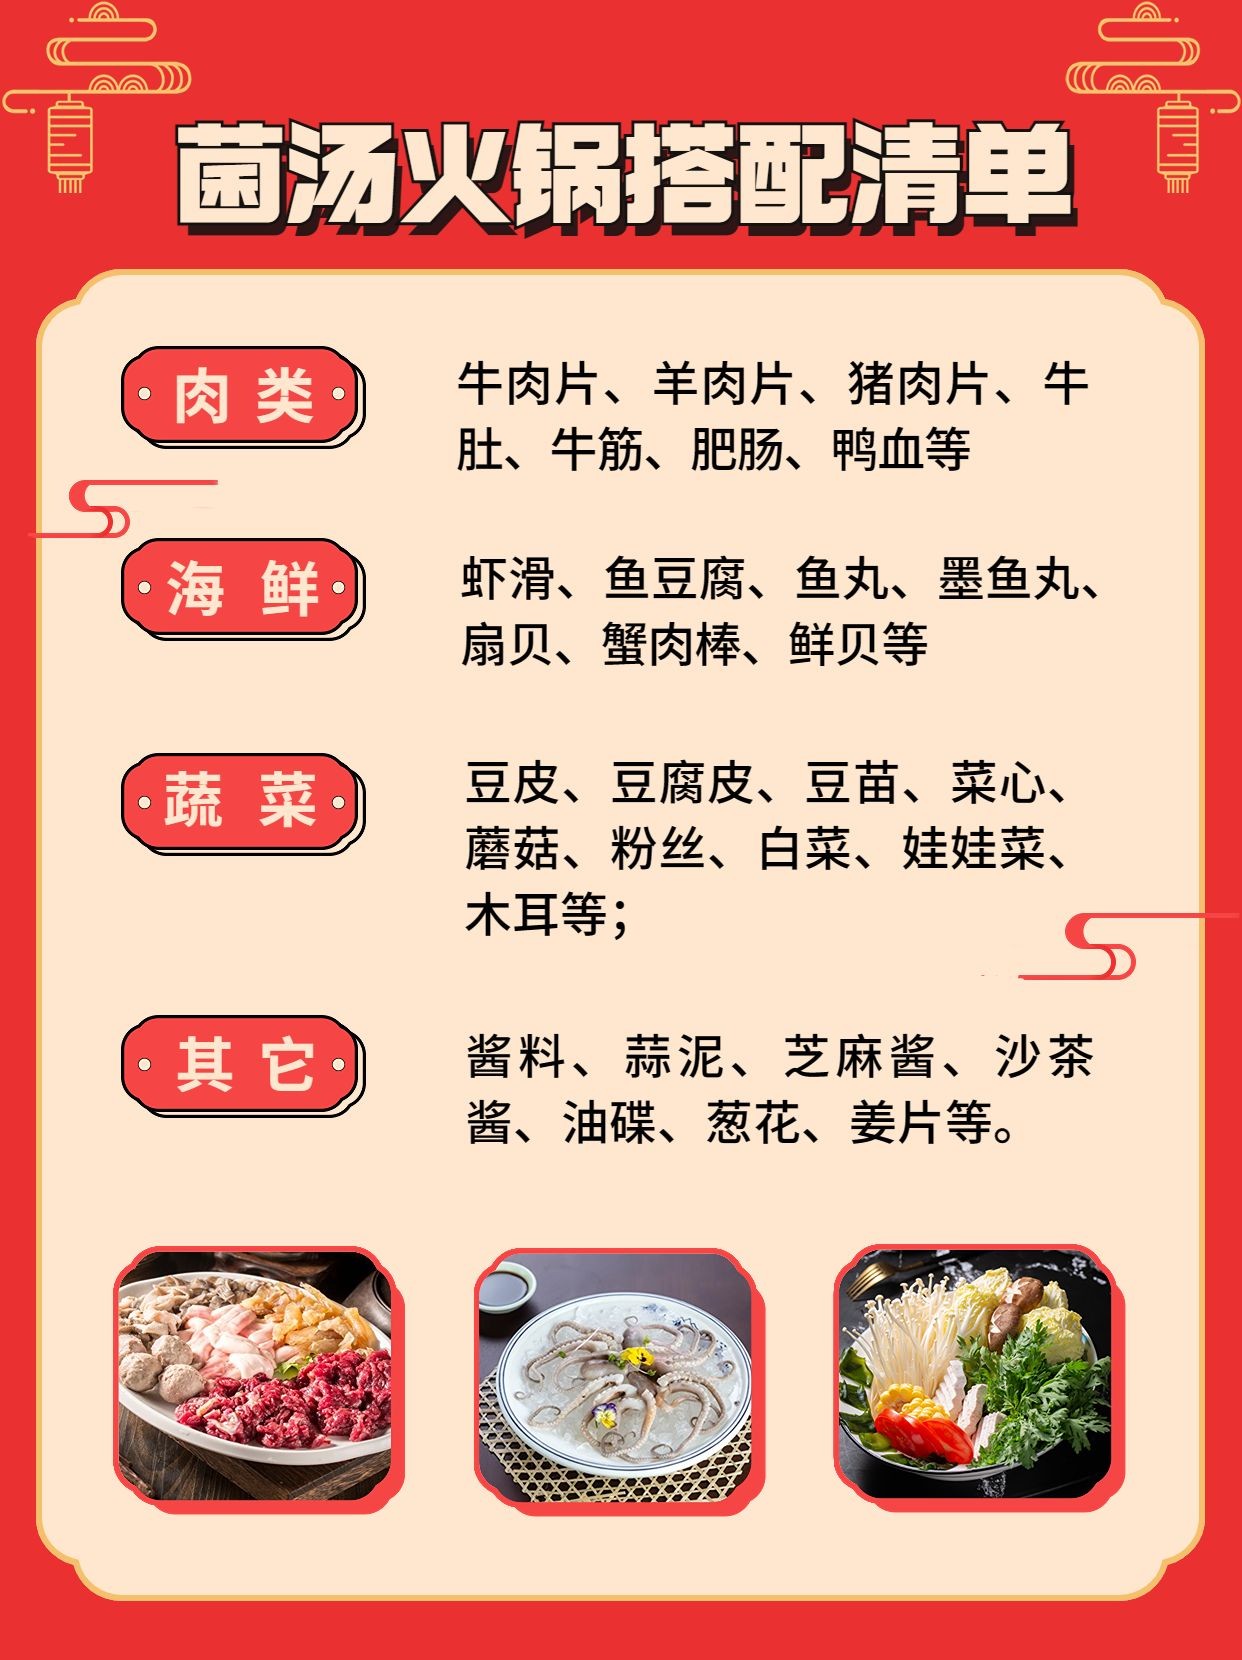 餐饮美食火锅搭配清单攻略小红书套装小红书配图预览效果